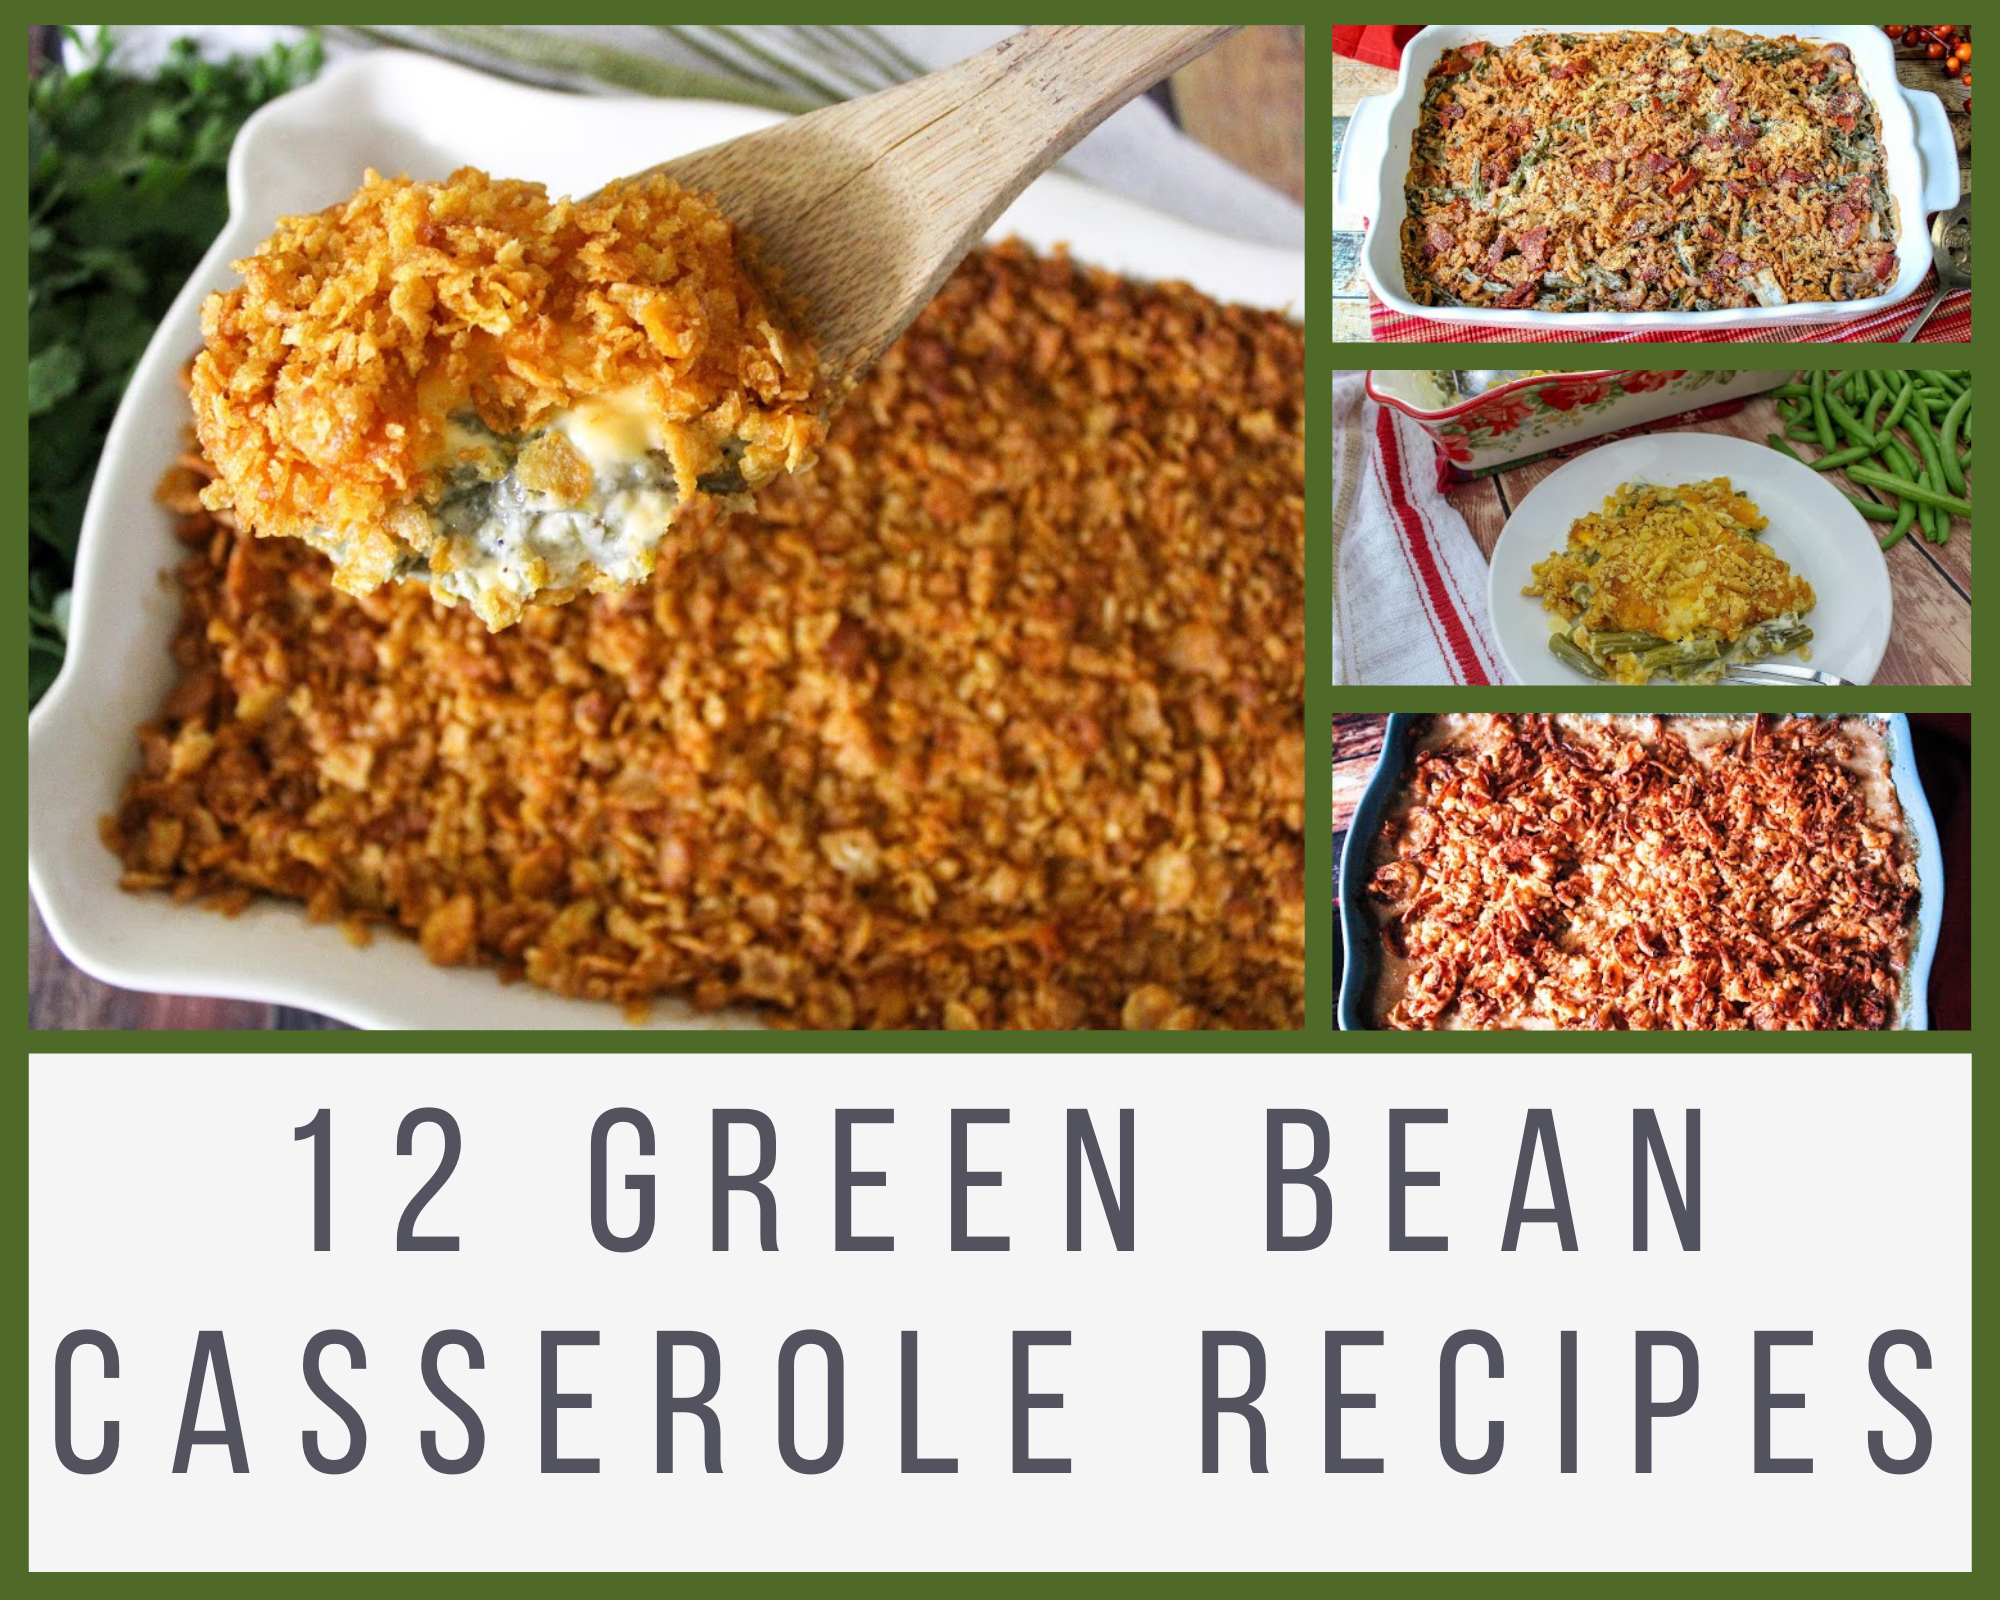 Green bean casseroles